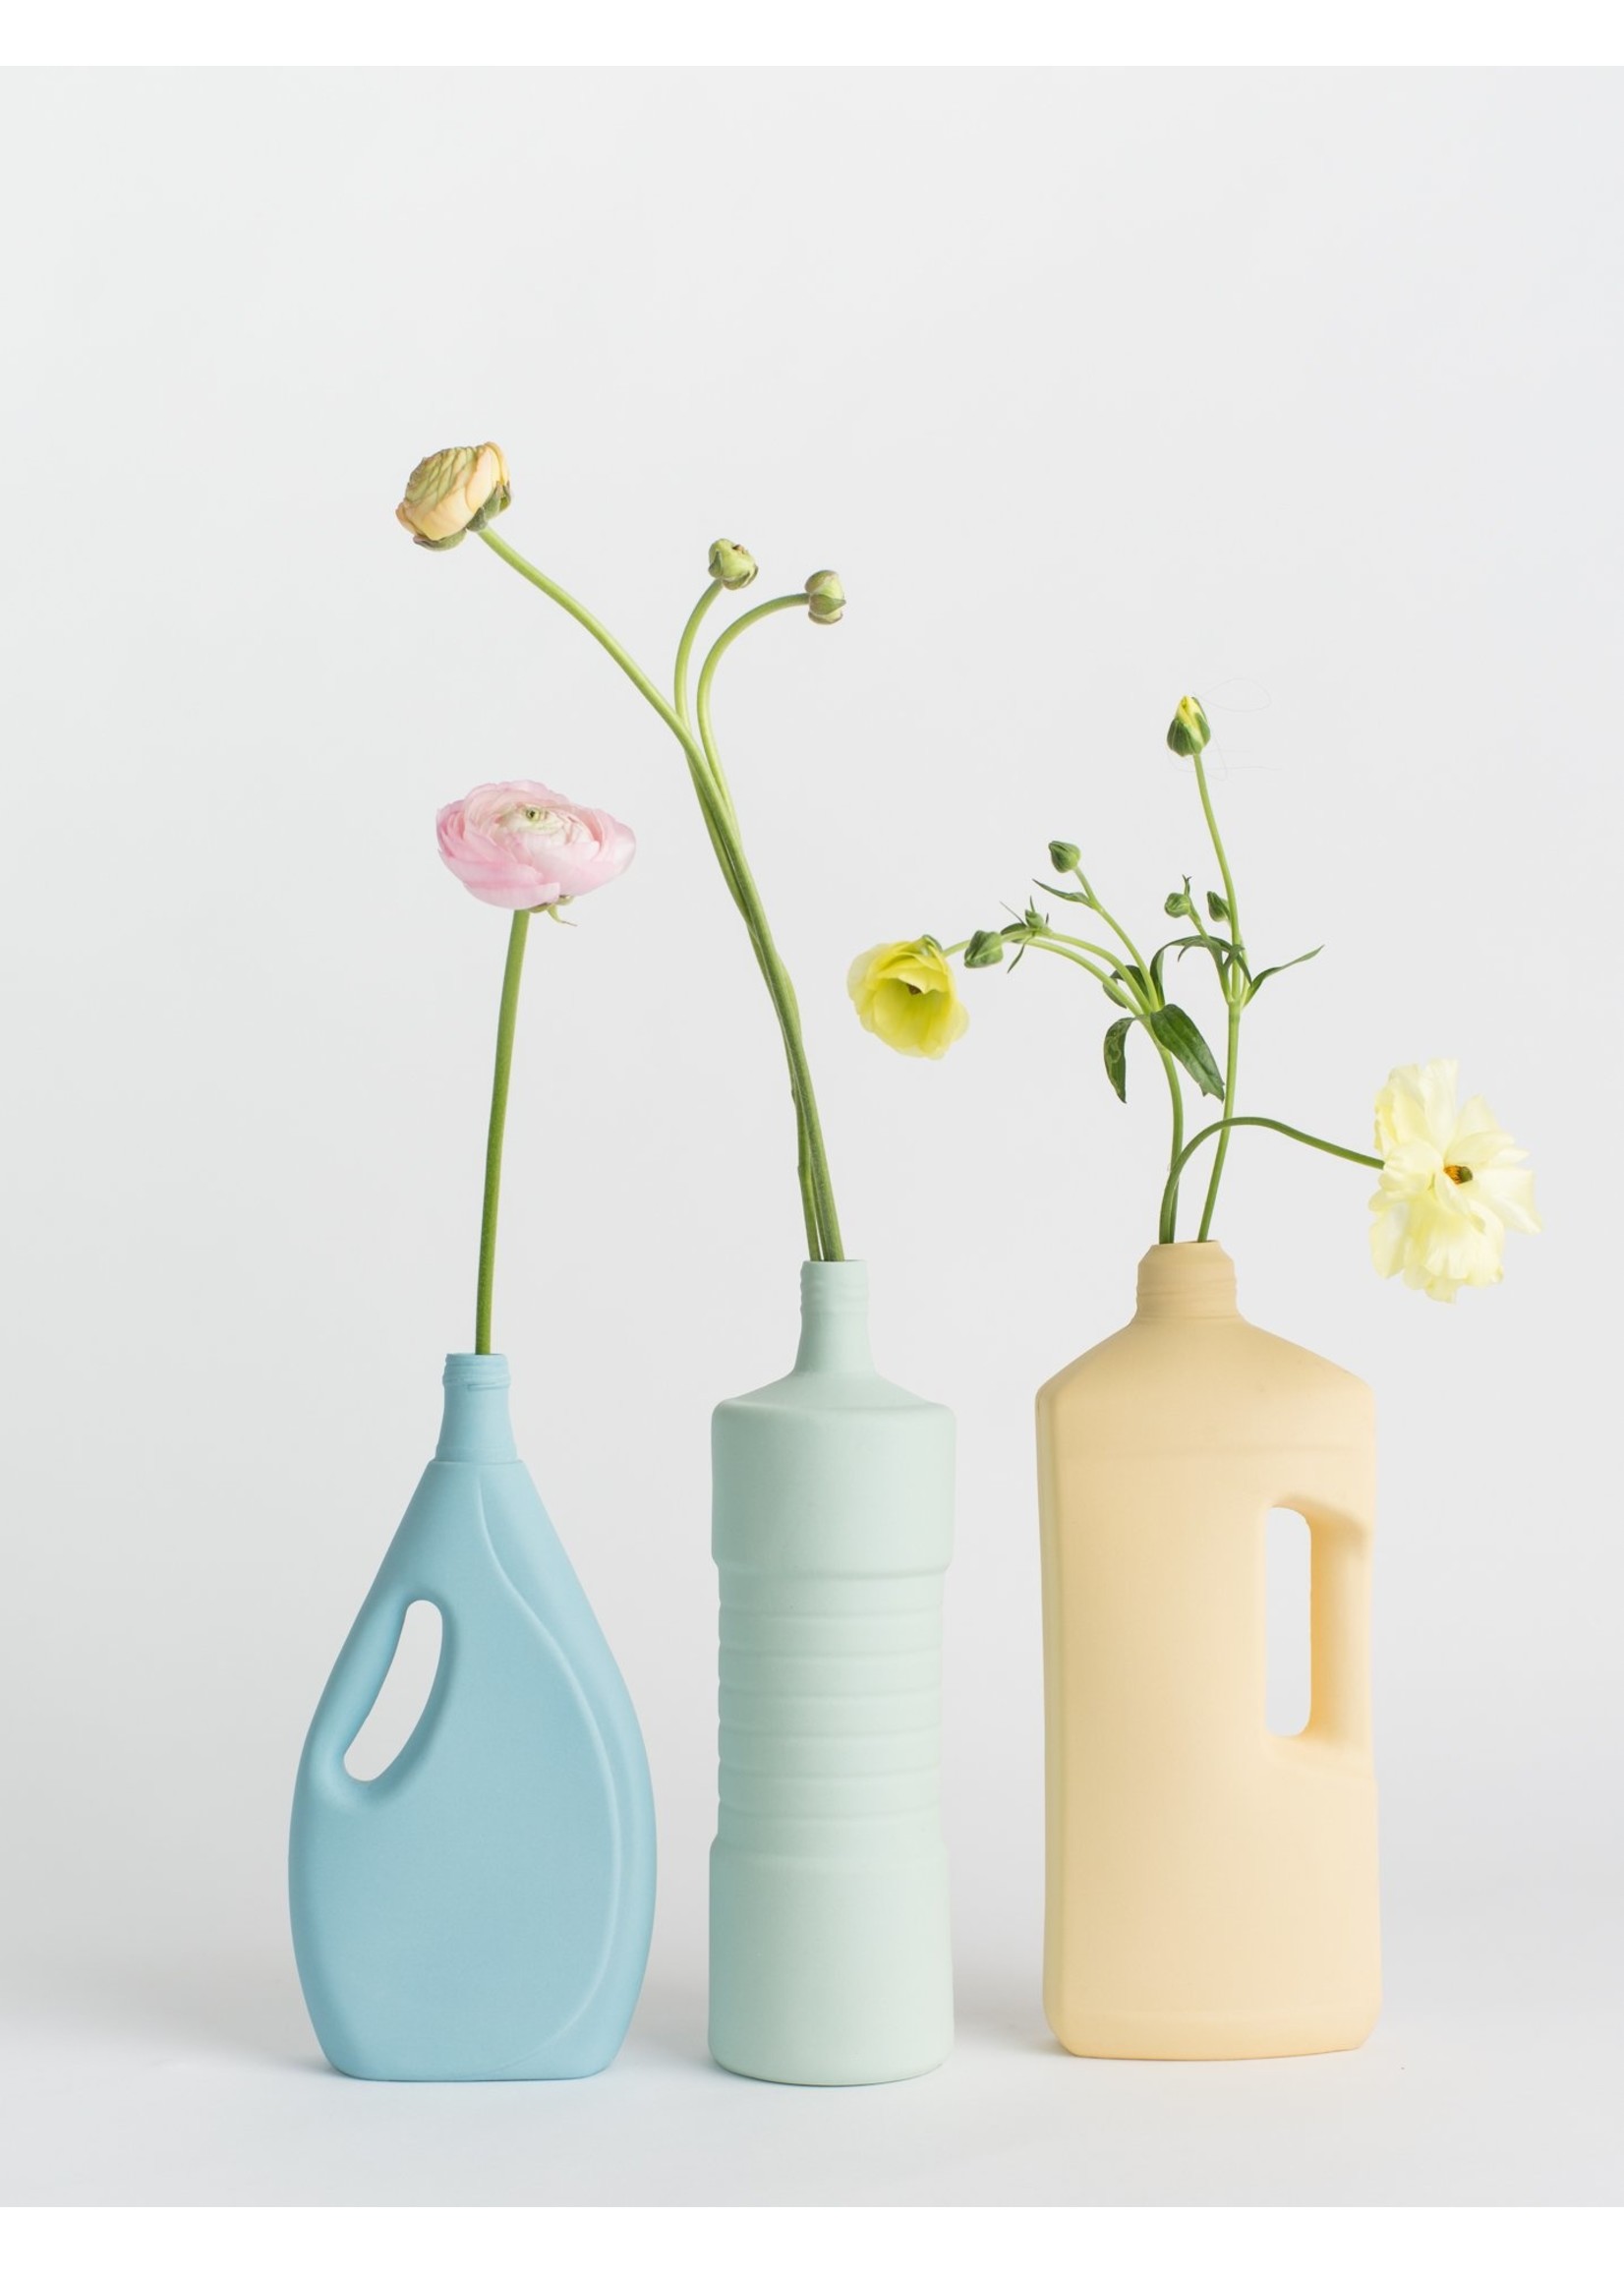 Foekje Fleur porcelain bottle vase #3 warm yellow